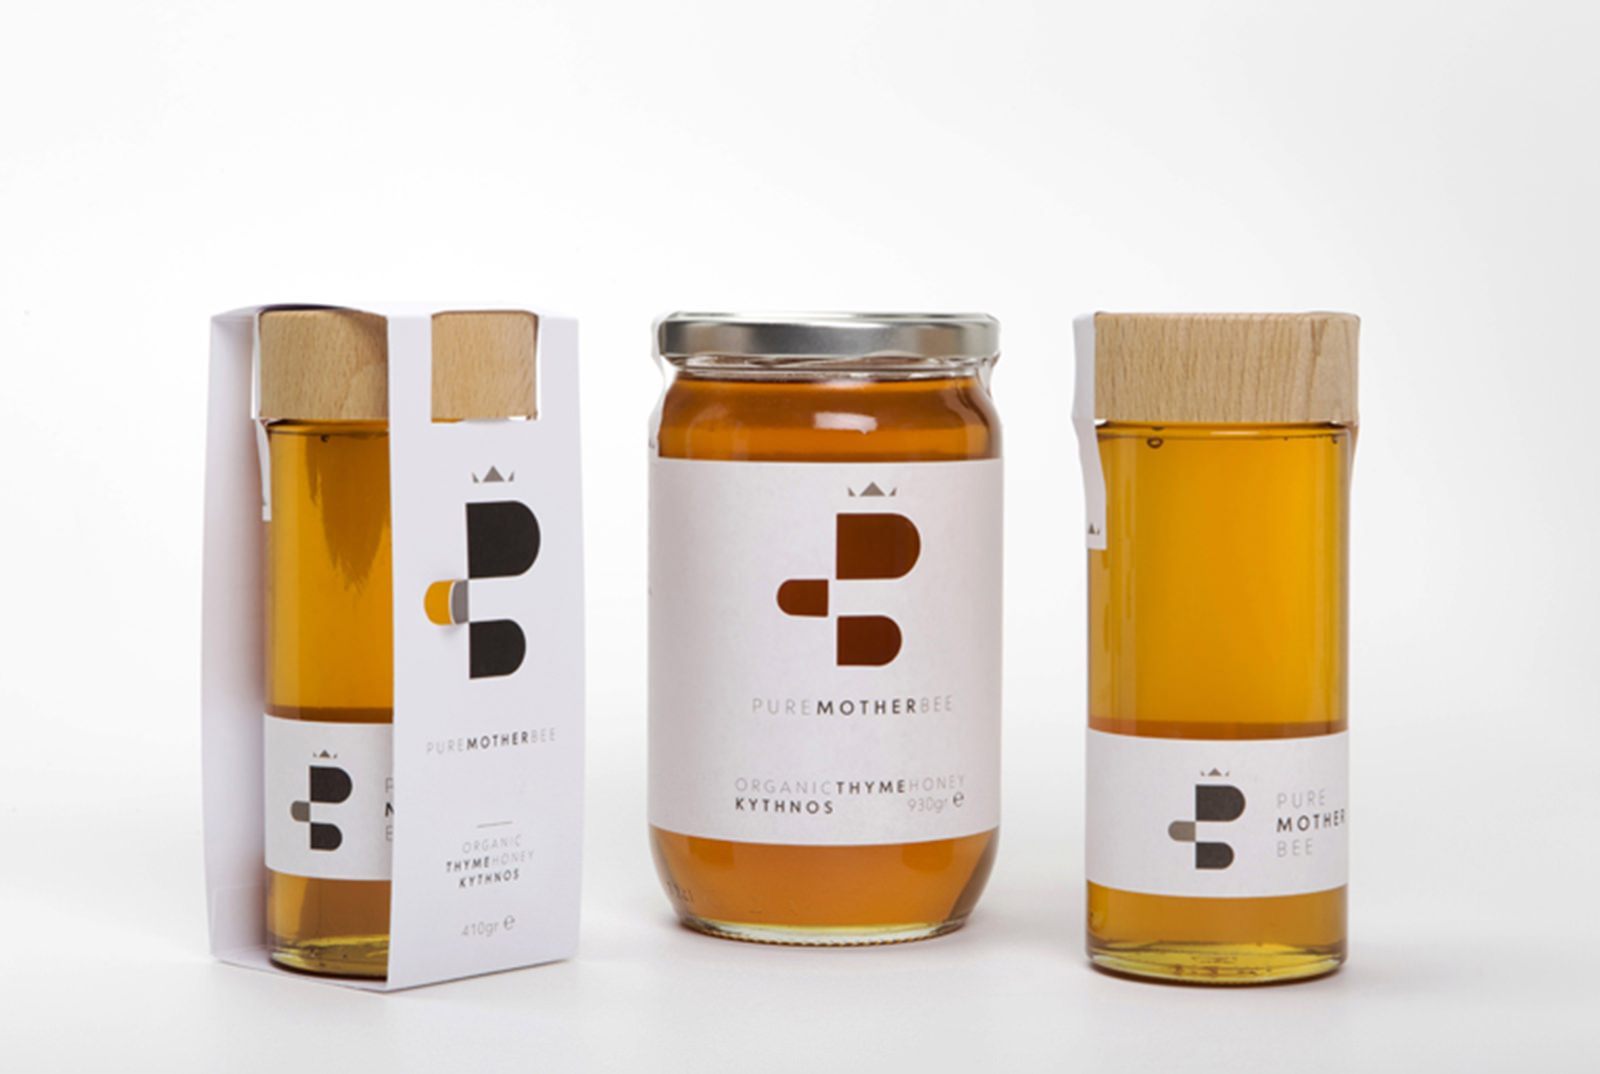 pure mother bee honey packaging    s  u0026 team brand agency